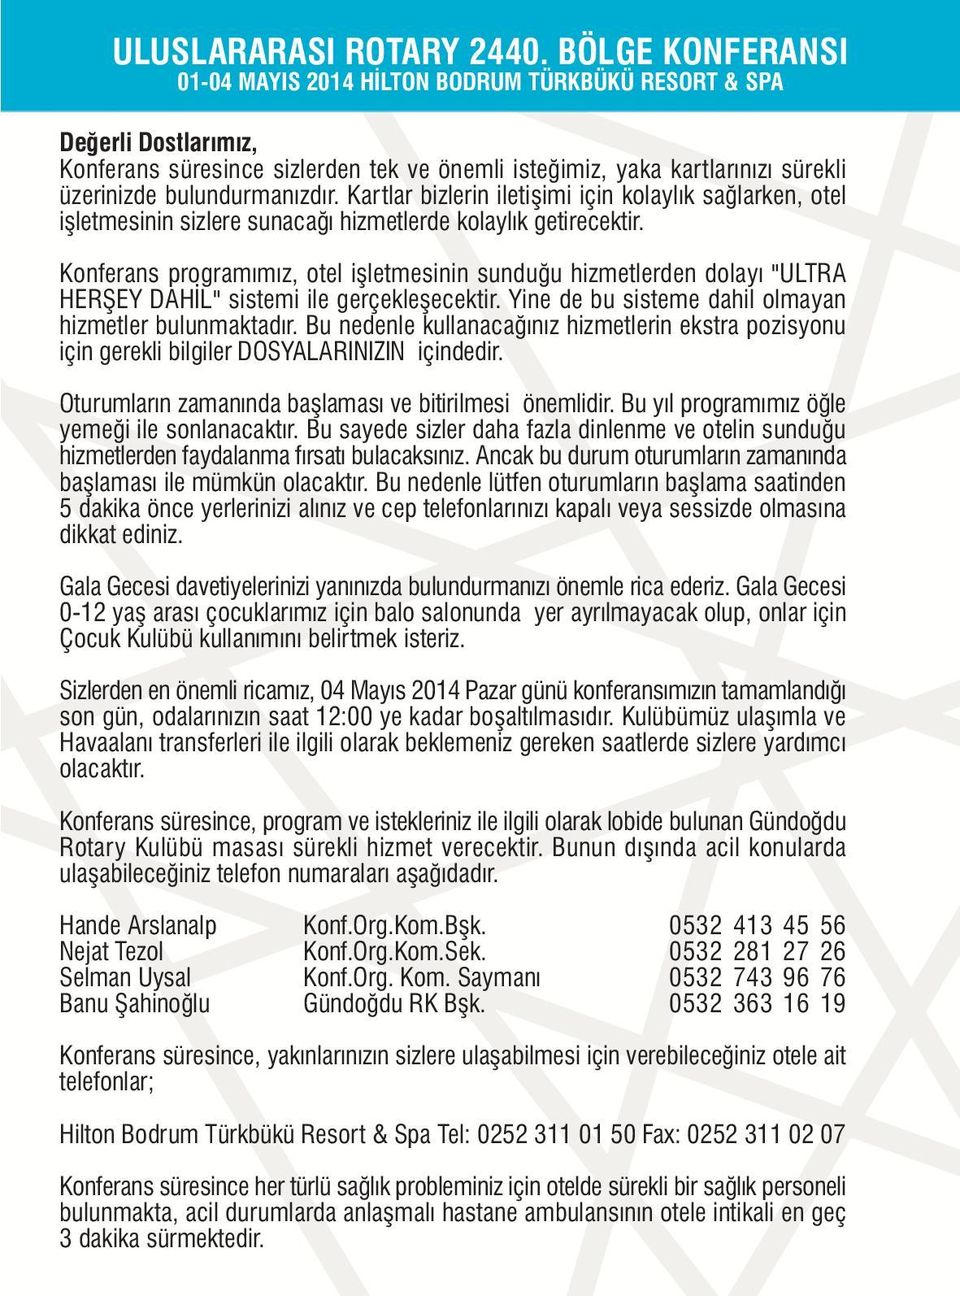 Konferans programýmýz, otel iþletmesinin sunduðu hizmetlerden dolayý "ULTRA HERÞEY DAHÝL" sistemi ile gerçekleþecektir. Yine de bu sisteme dahil olmayan hizmetler bulunmaktadýr.